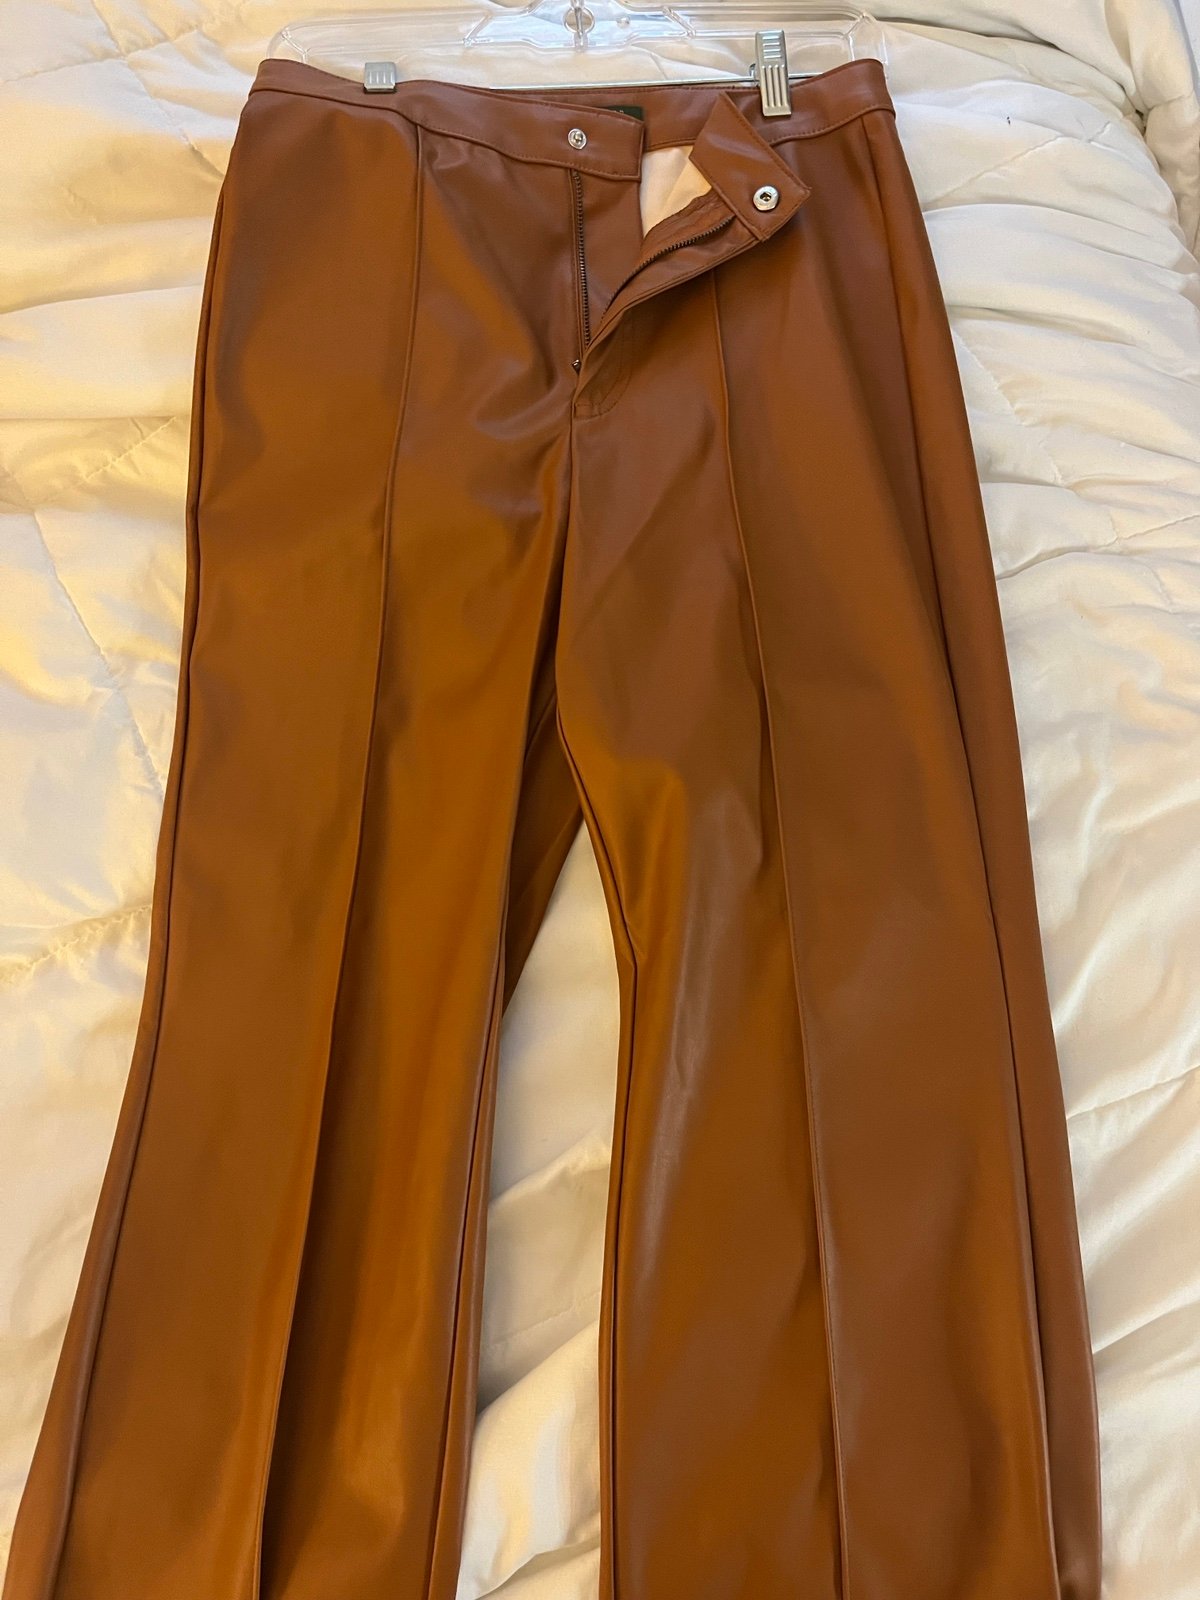 Elegant wild fable leather pants iFceM2Dl6 for sale